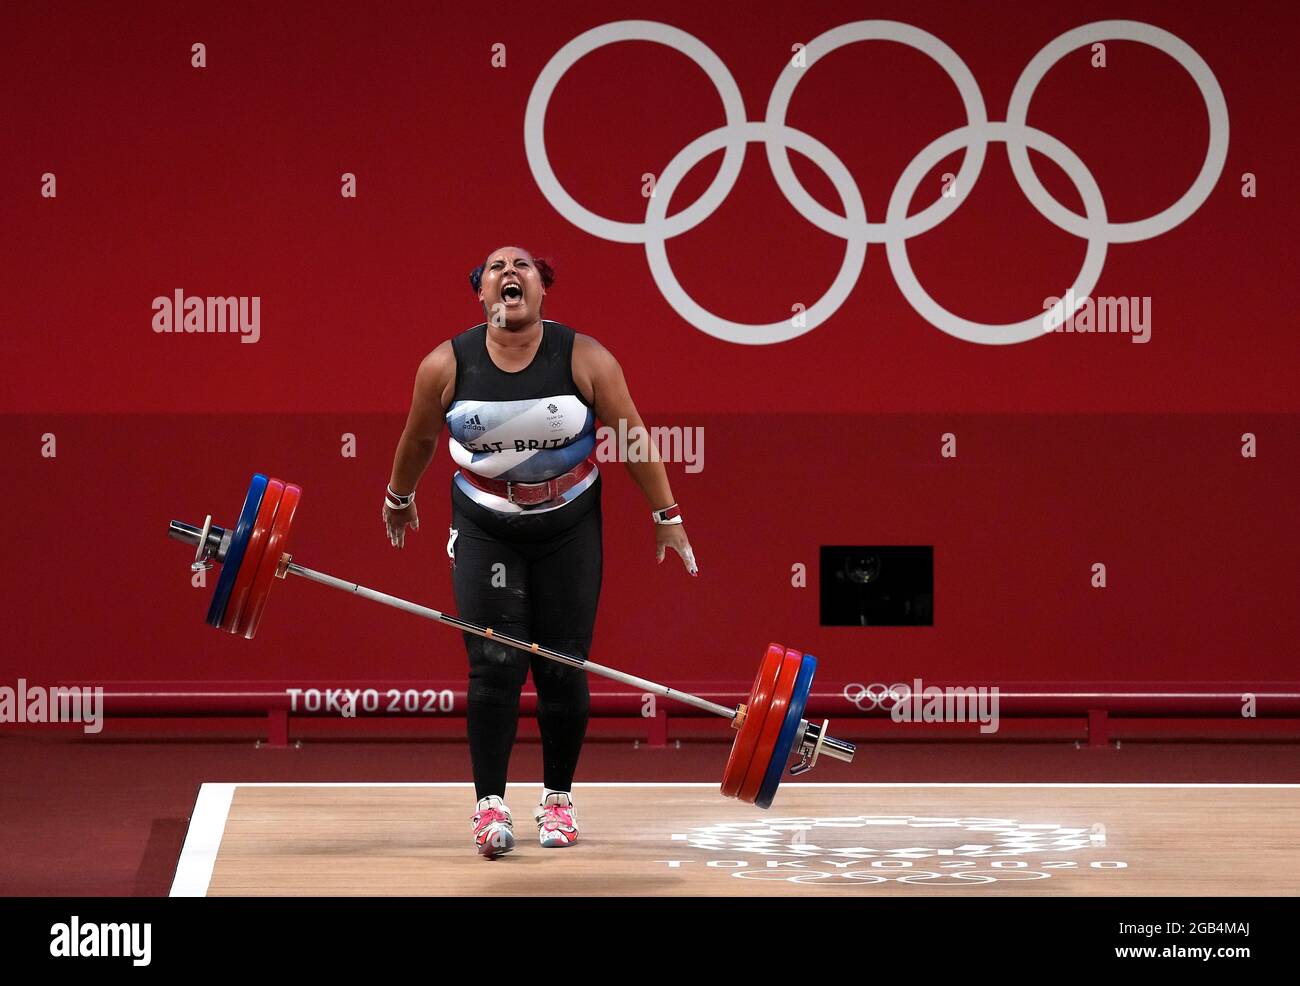 Levantamiento de pesas olimpico fotografías e imágenes de alta resolución -  Página 10 - Alamy